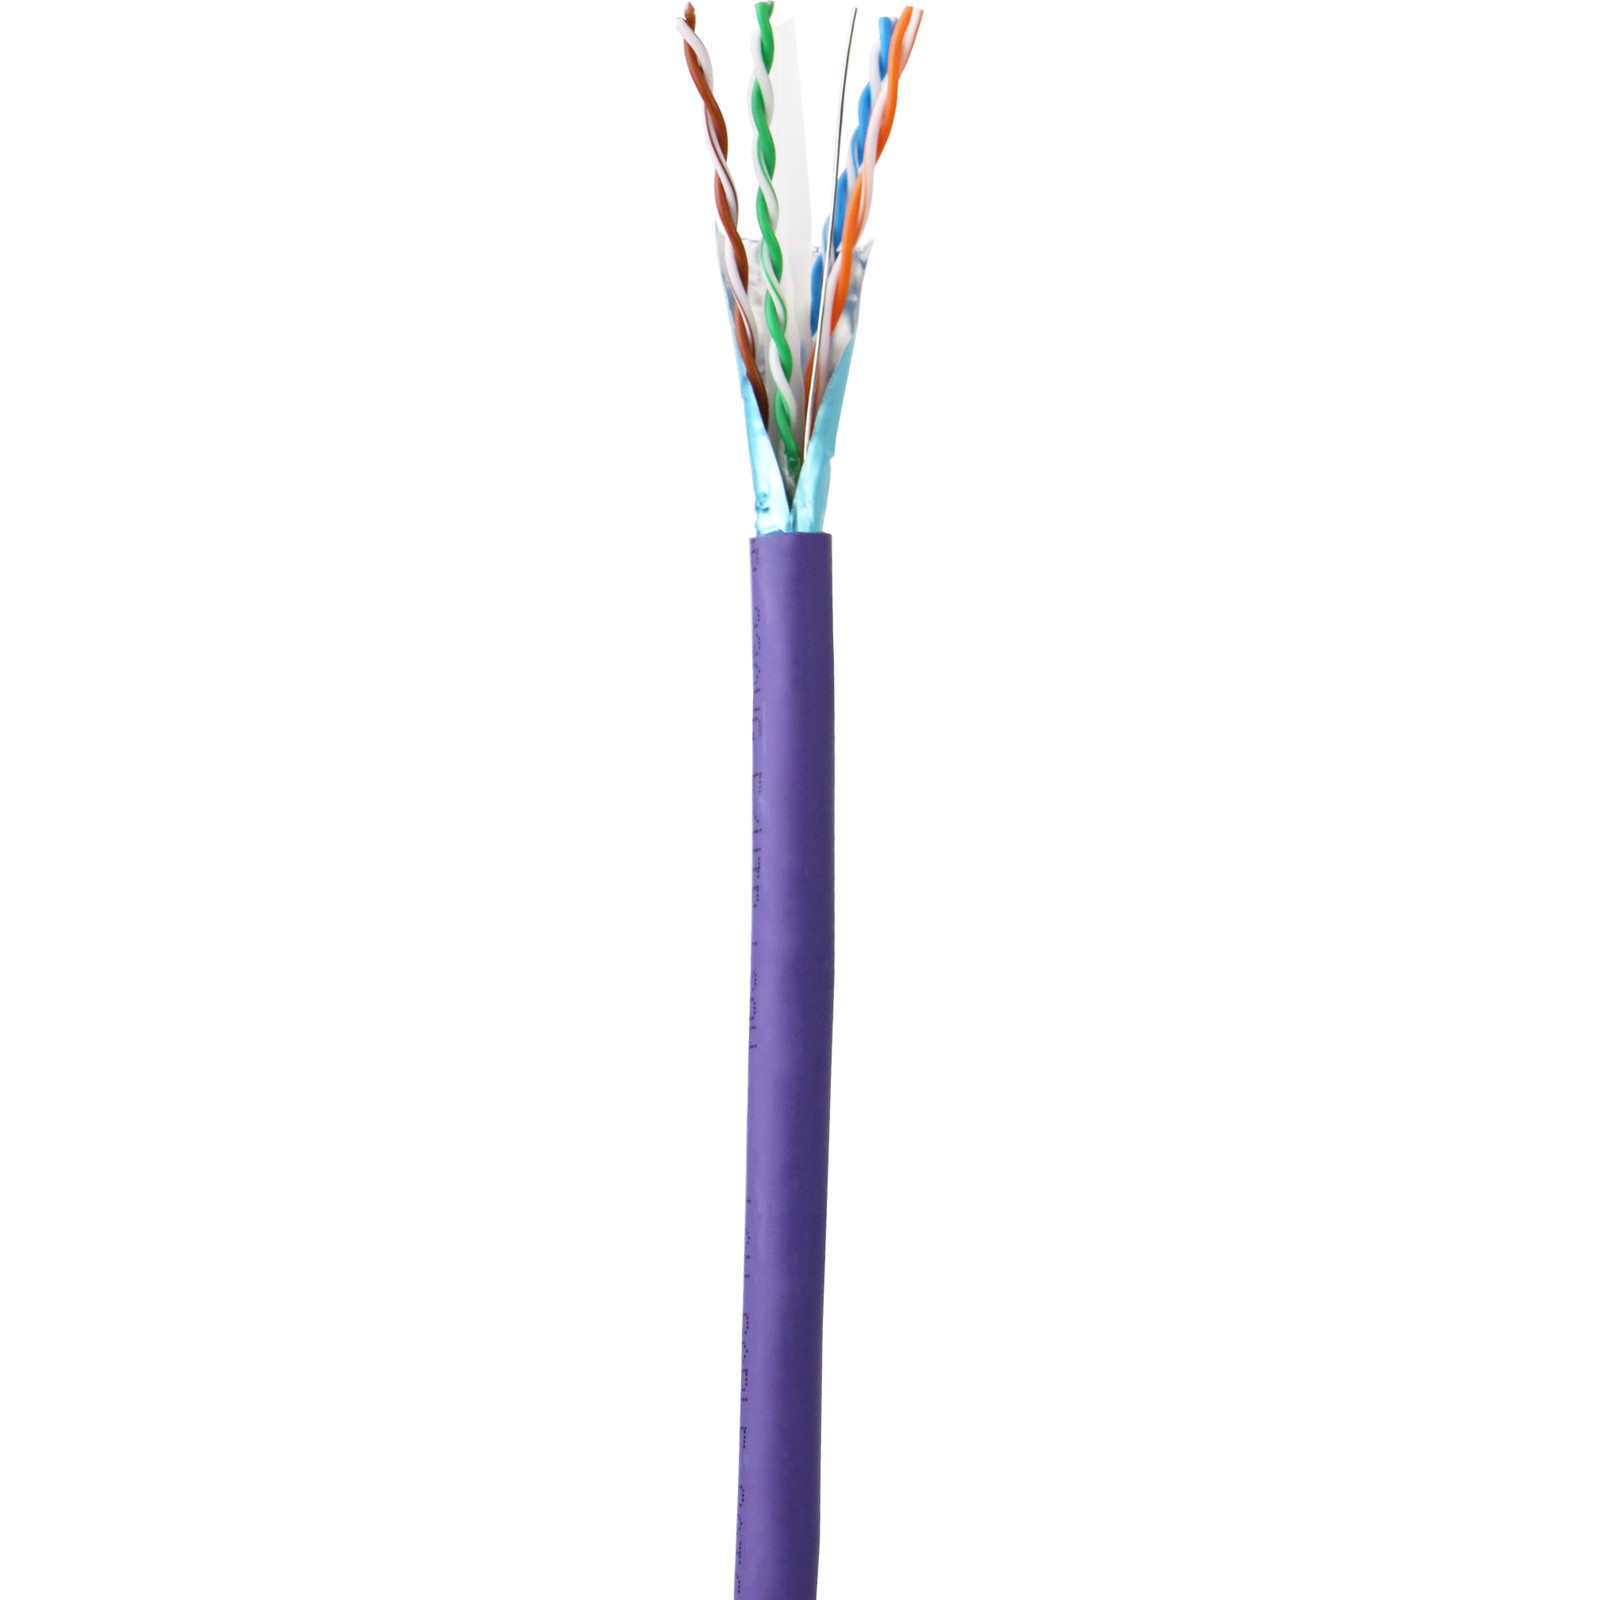 Câble à paire torsadée blindée F/UTP de catégorie 6 LSOH - Violet - 305m